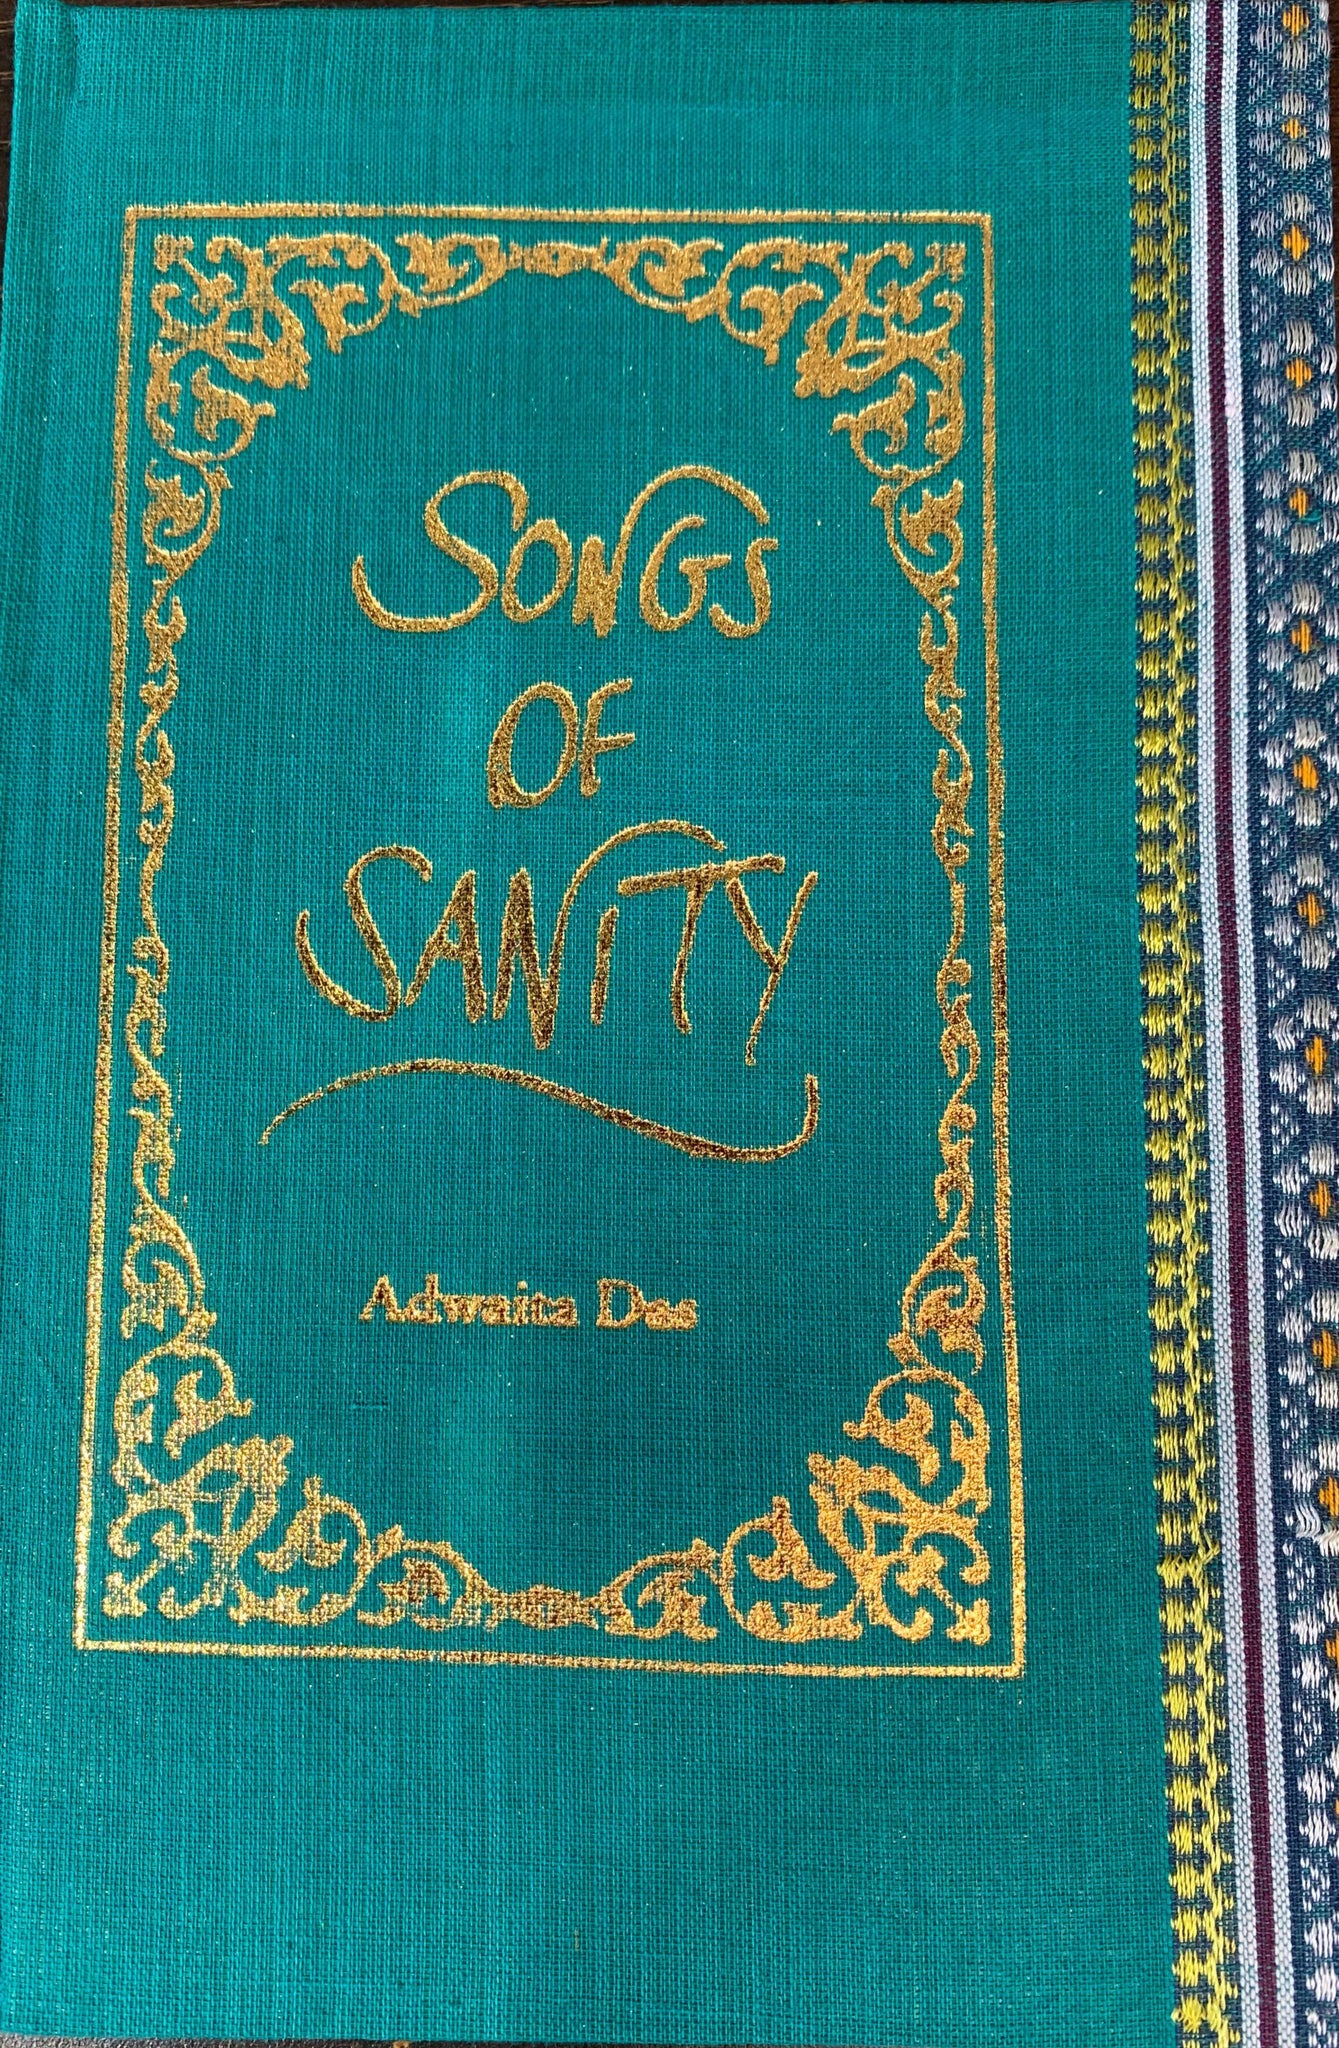 Songs Of Sanity